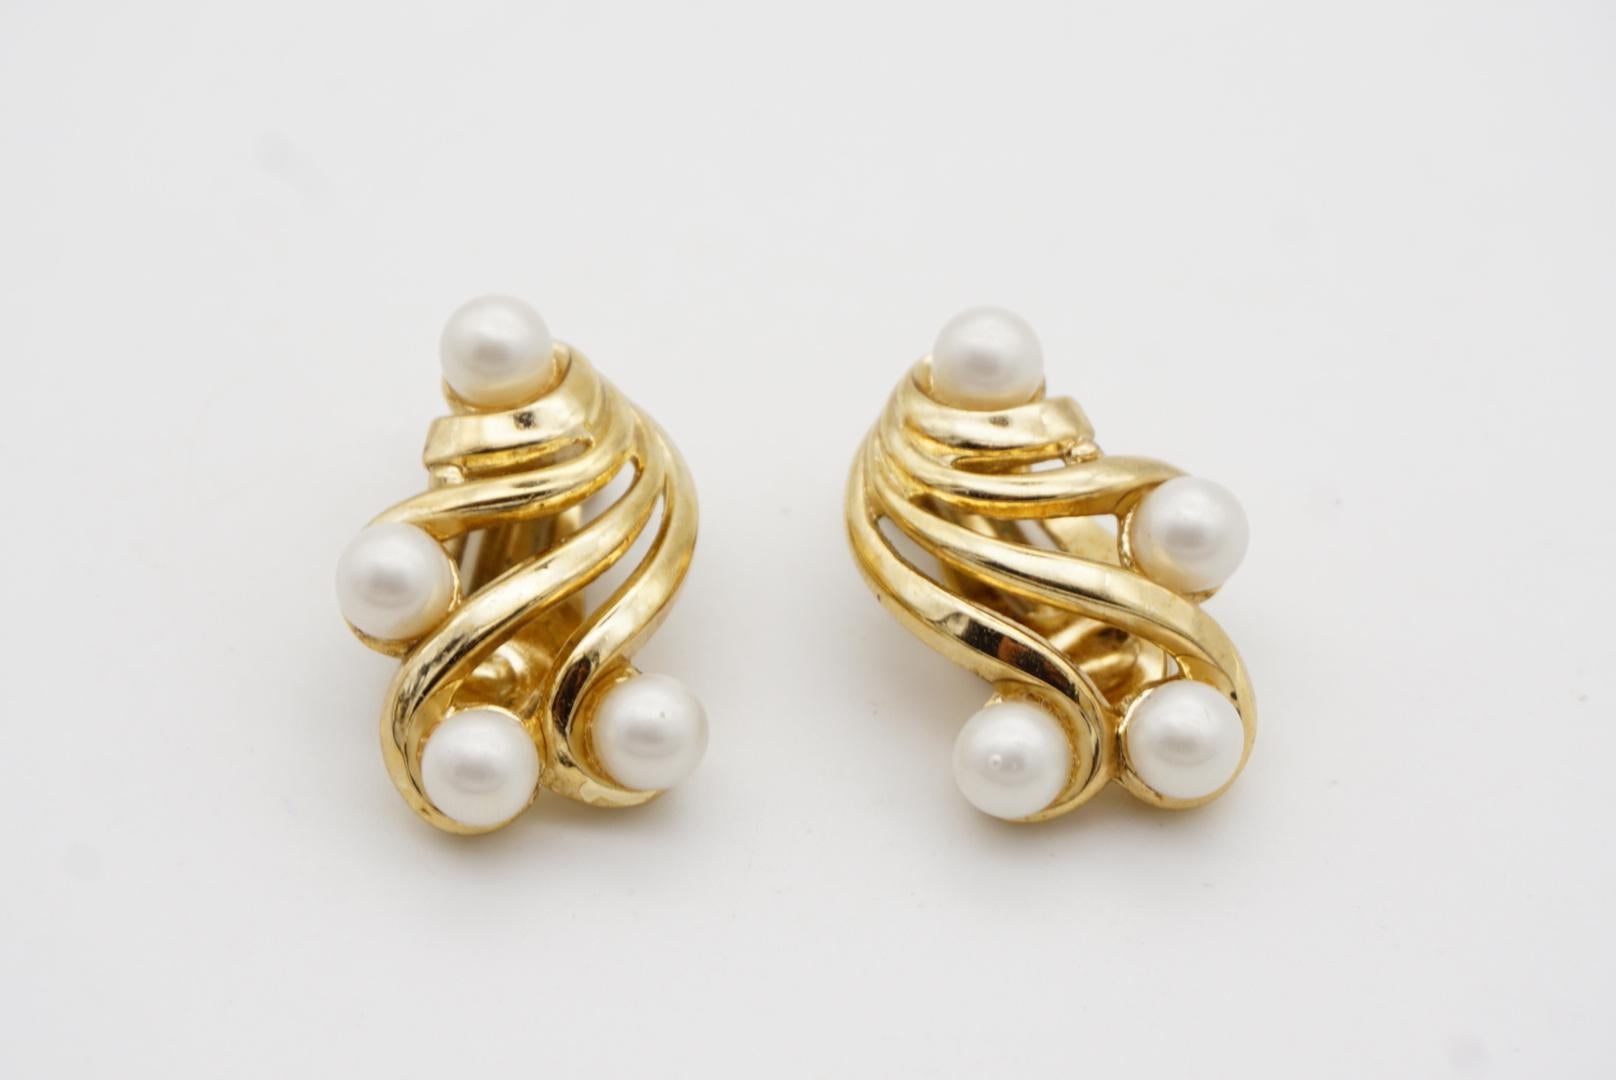 Crown Trifari Vintage 1950s Flower Wing White Pearls Openwork Interlock Earrings For Sale 4